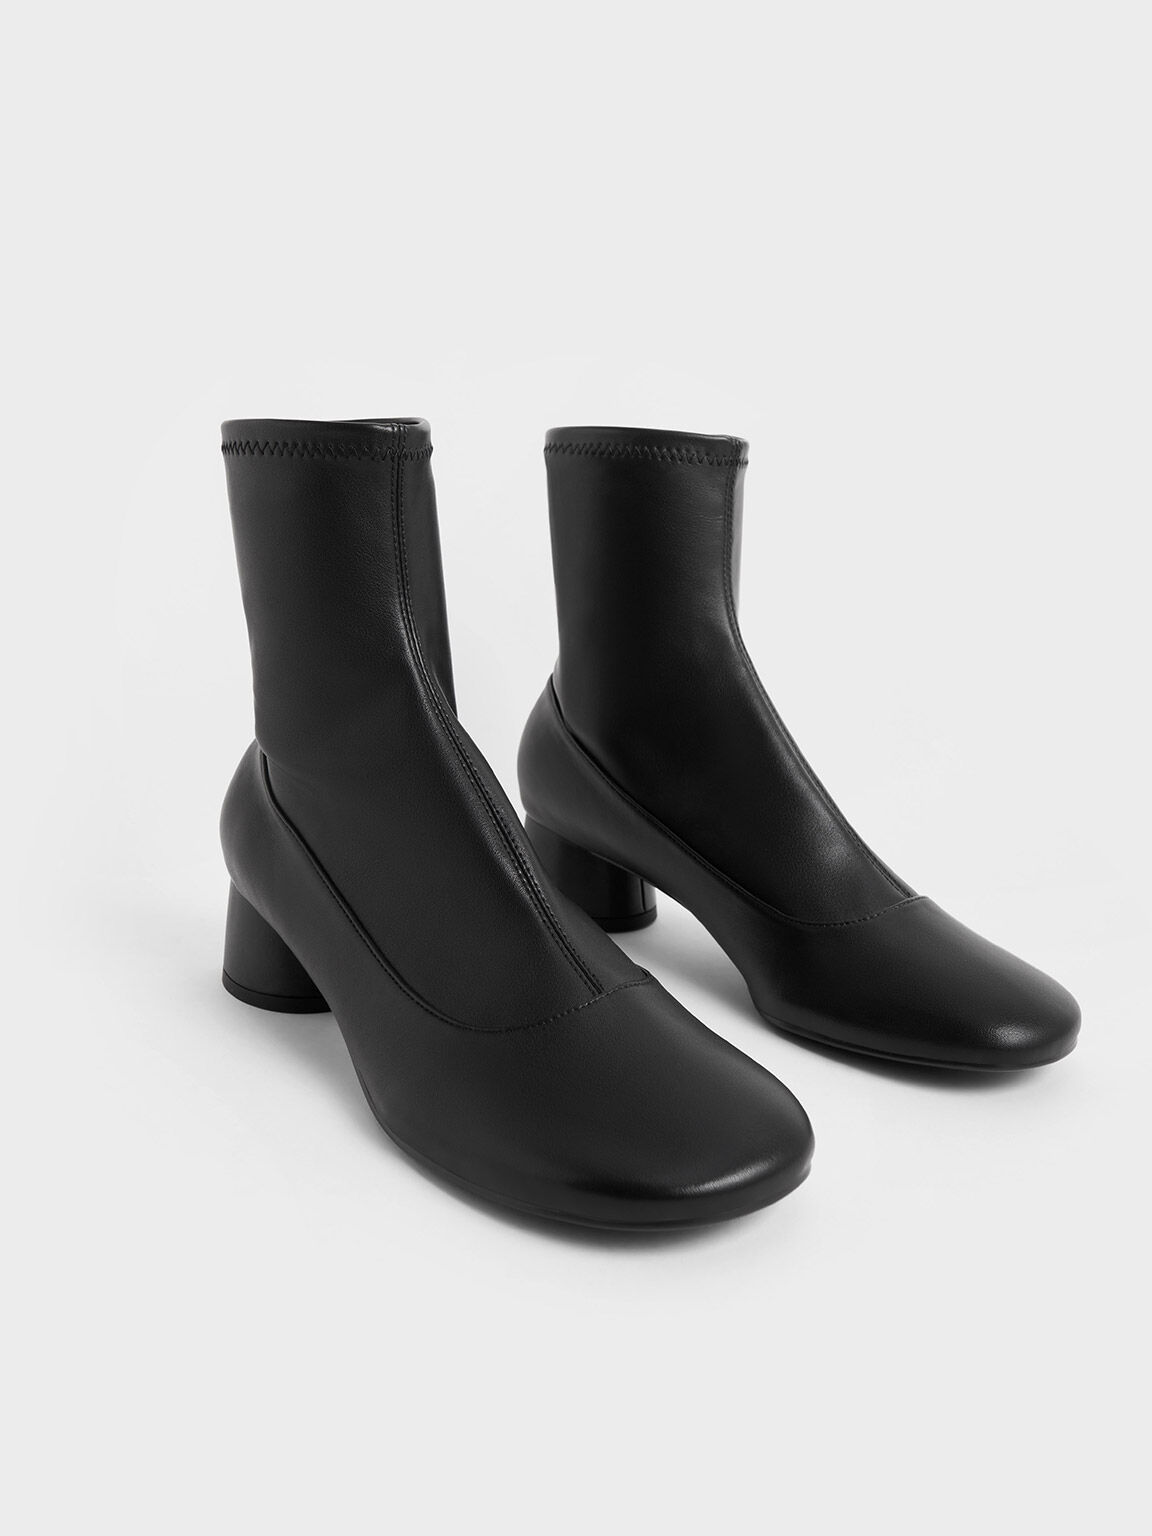 Stitch-Trim Ankle Boots, Black, hi-res